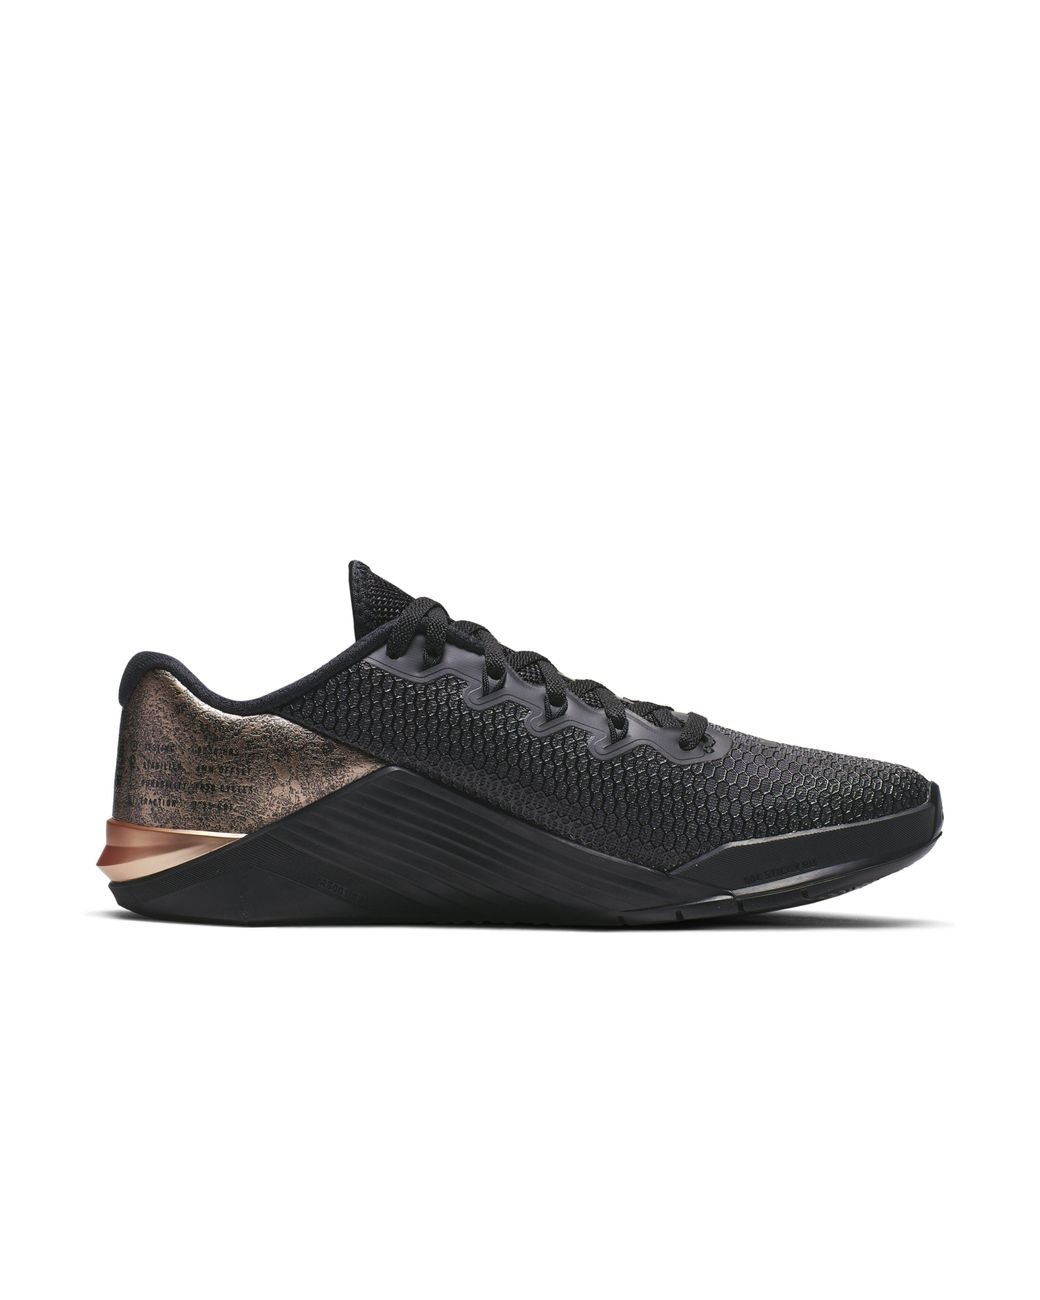 Nike Metcon 5 Black X Rose Gold Training Shoe | Lyst UK